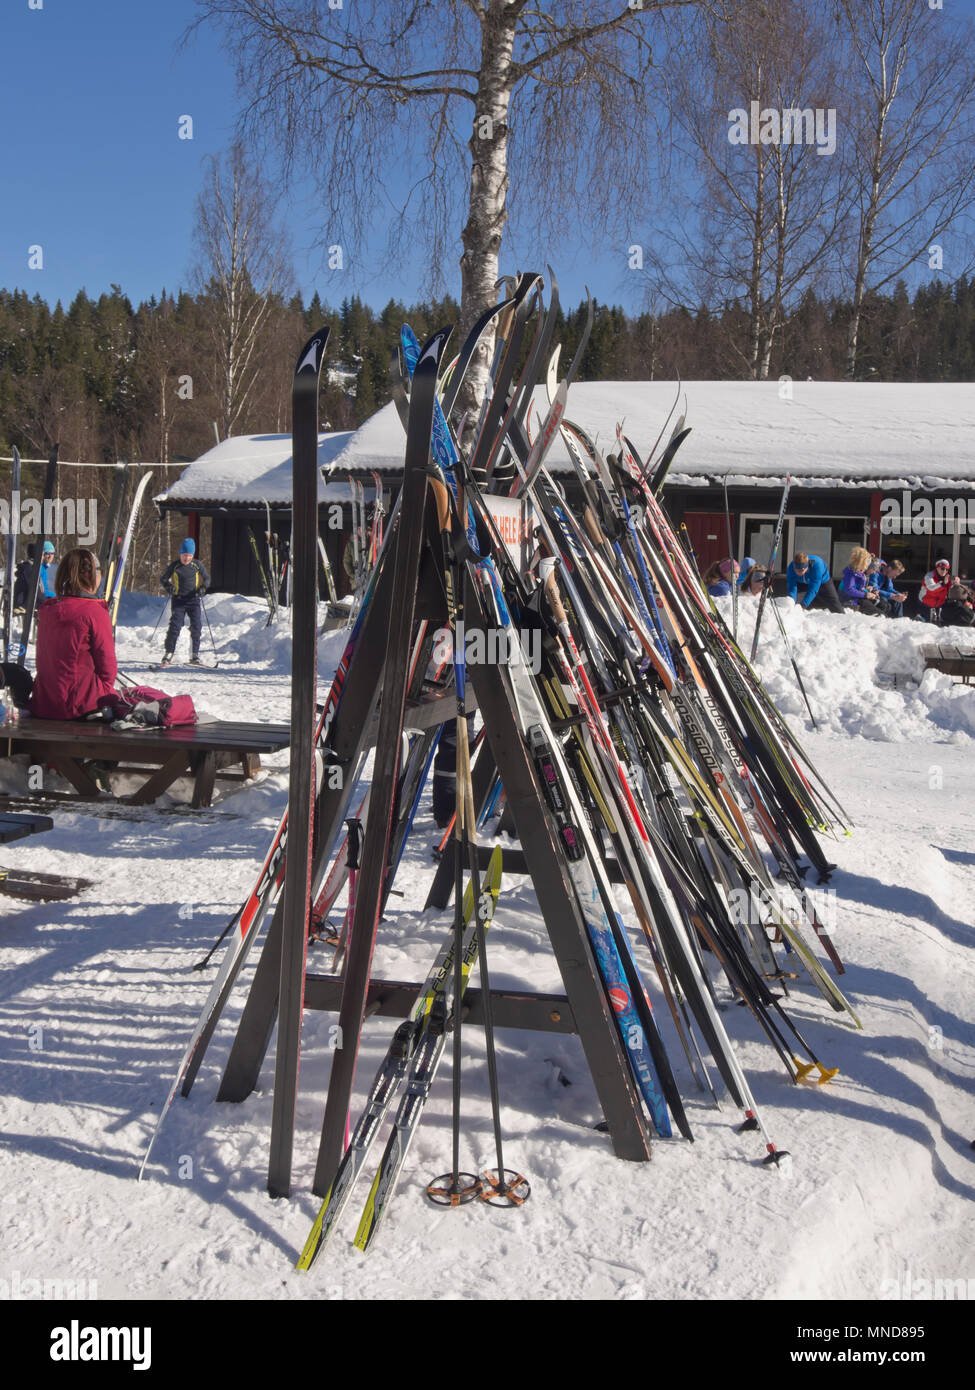 In Mariholtet Ostmarka è una destinazione popolare per gli sciatori ed escursionisti su una domenica d'inverno in Oslo Norvegia, portasci all'esterno della cabina Foto Stock